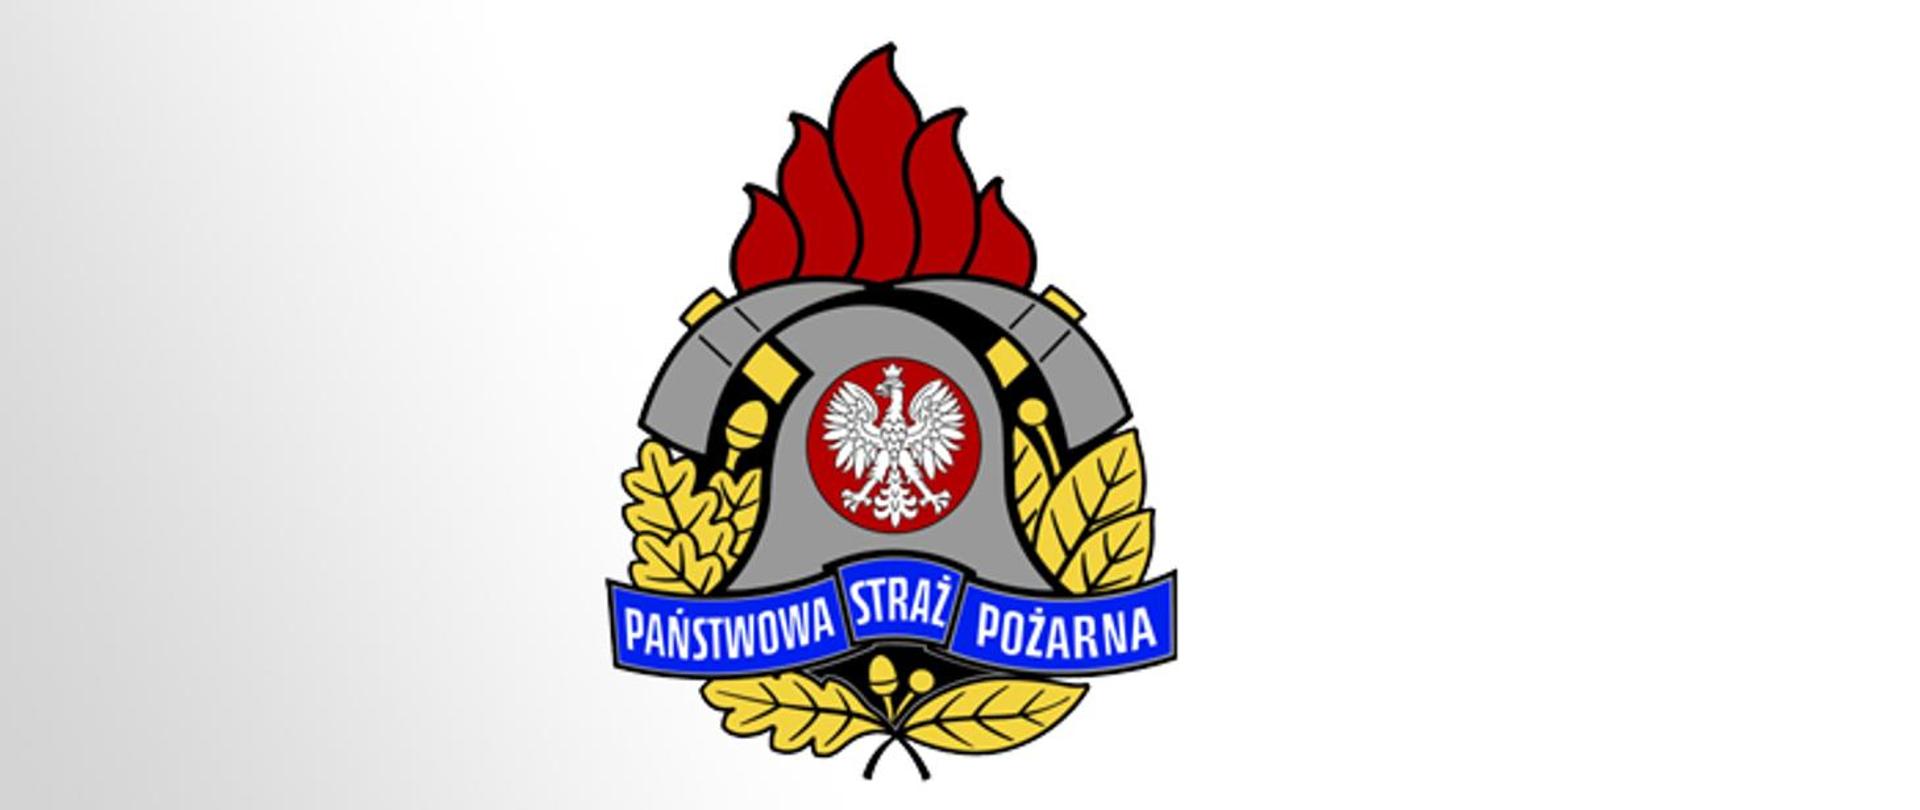 zdjęcie przedstawia logo Państwowej Straży Pożarnej na białym tle